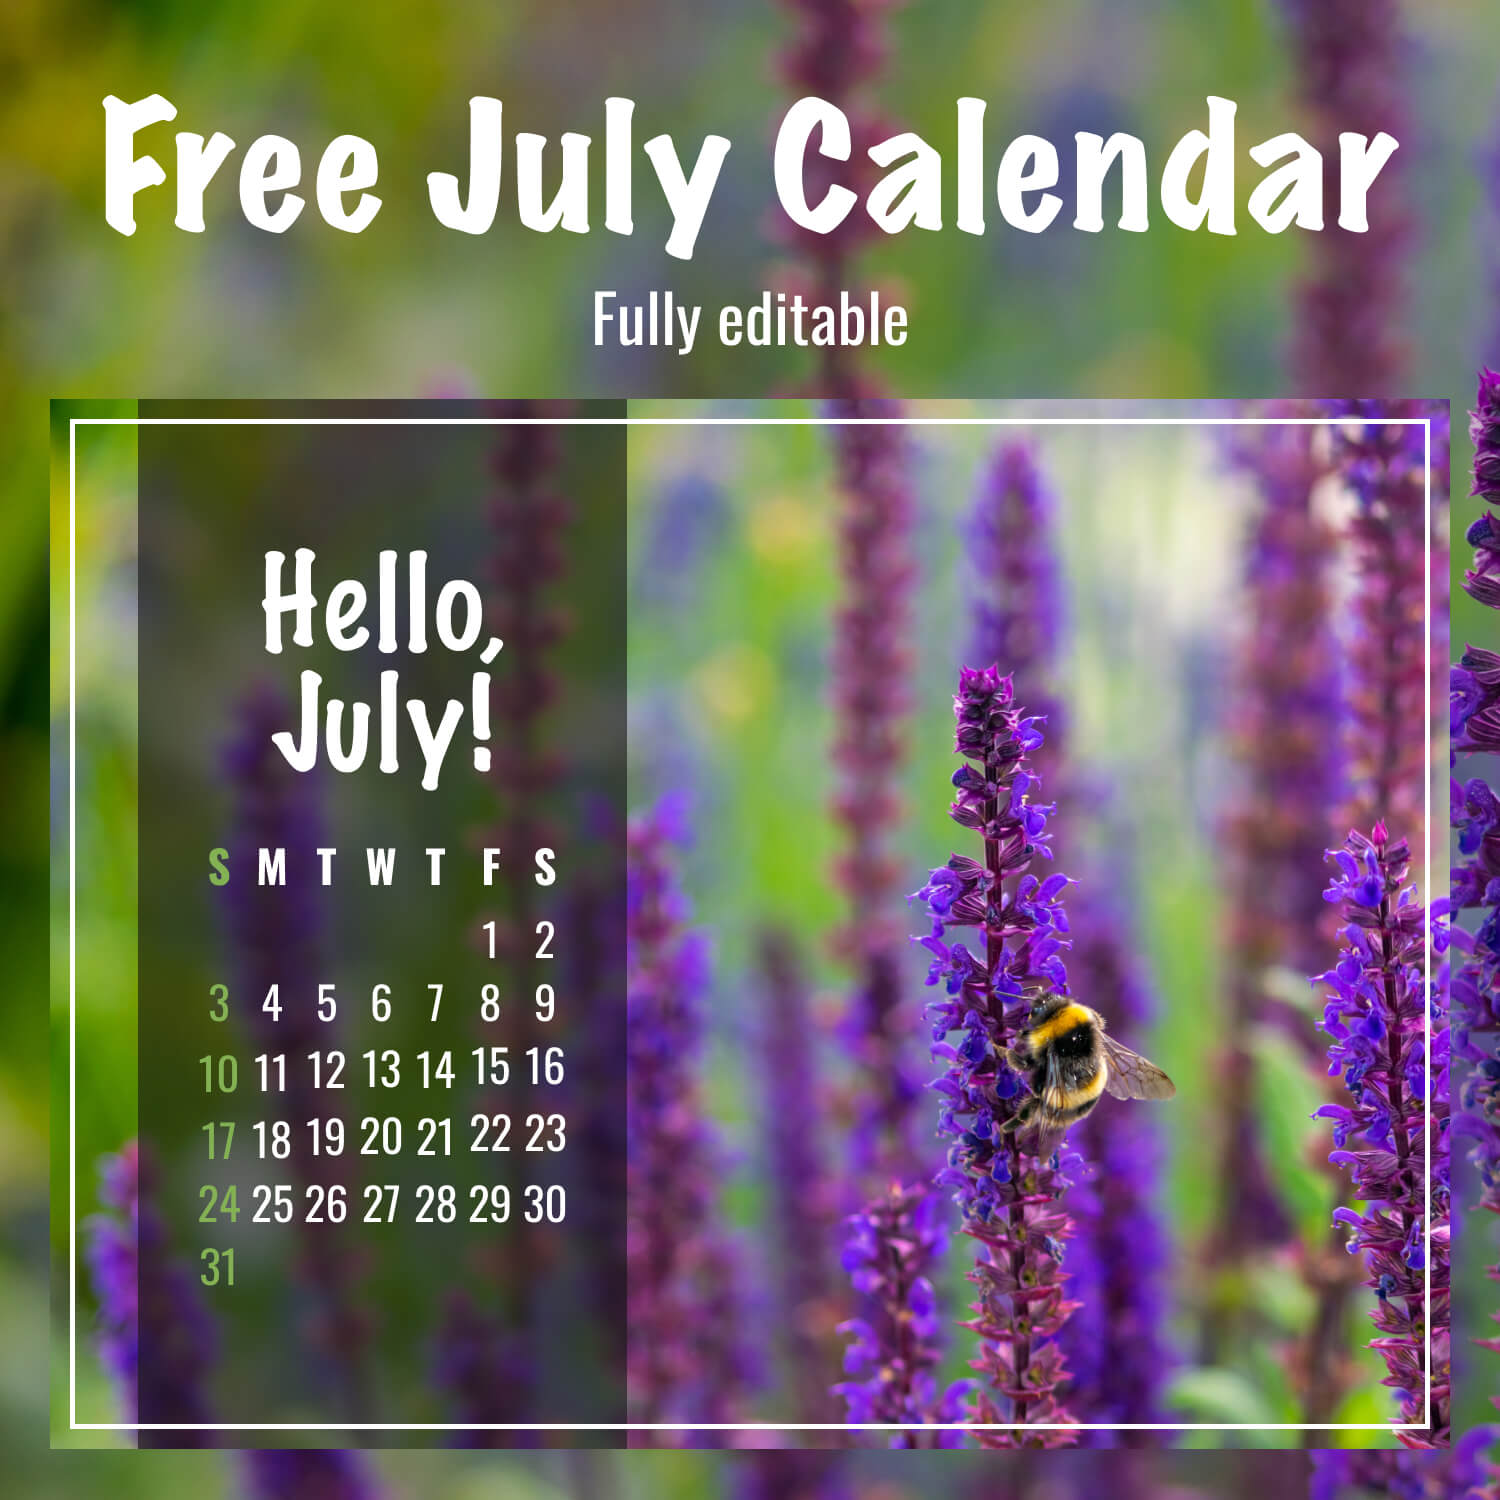 Free Sage Flower July Calendar cover image.